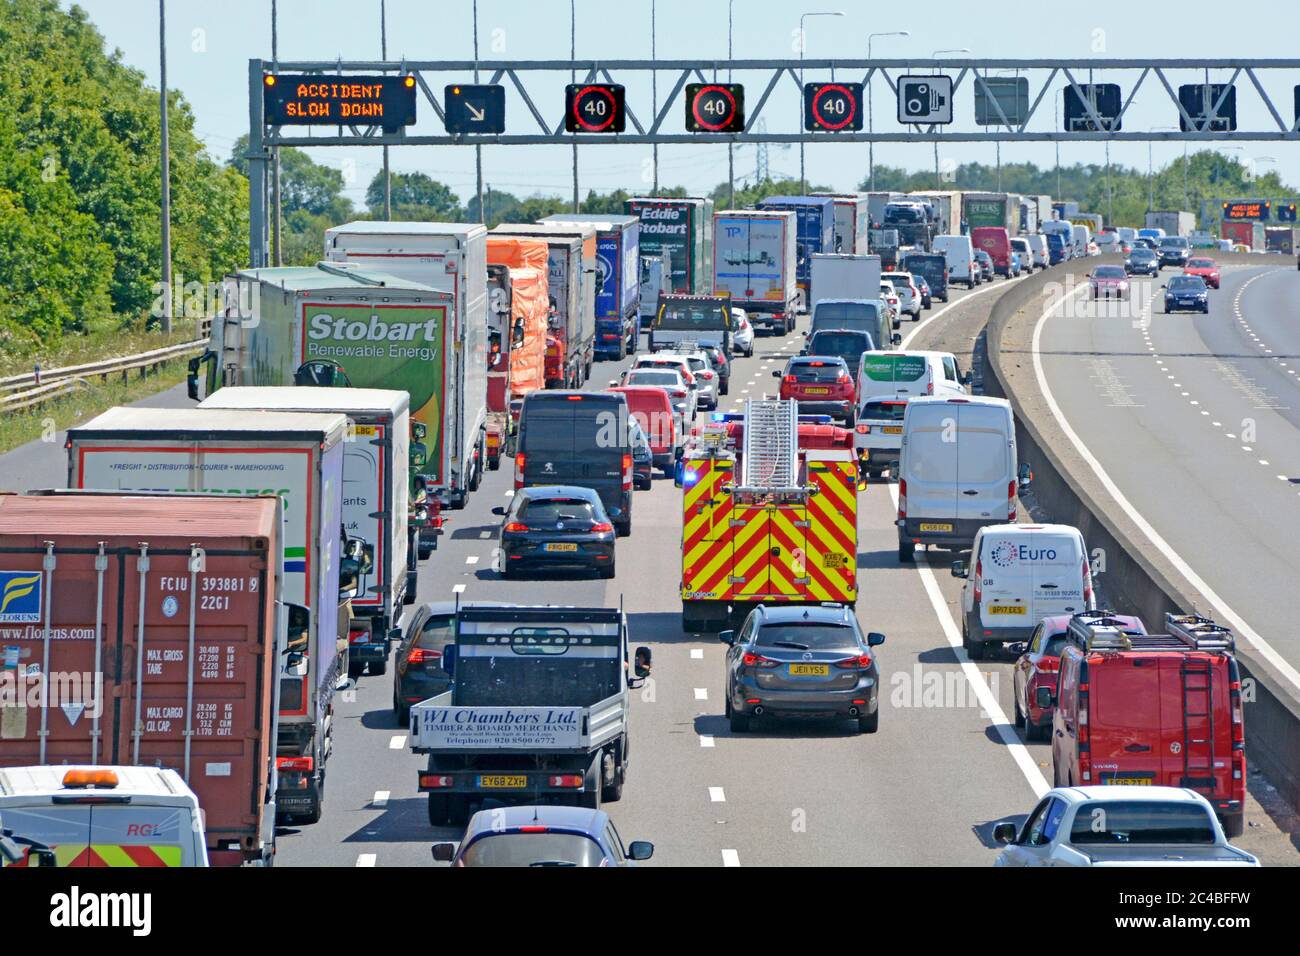 Autobahnraststätte Stau & Feuerwehrmotor auf Rettungsdienst rufen Unfallort in der Nähe von Brentwood zu erreichen, wie auf m25 Gantry Road Sign UK gezeigt Stockfoto